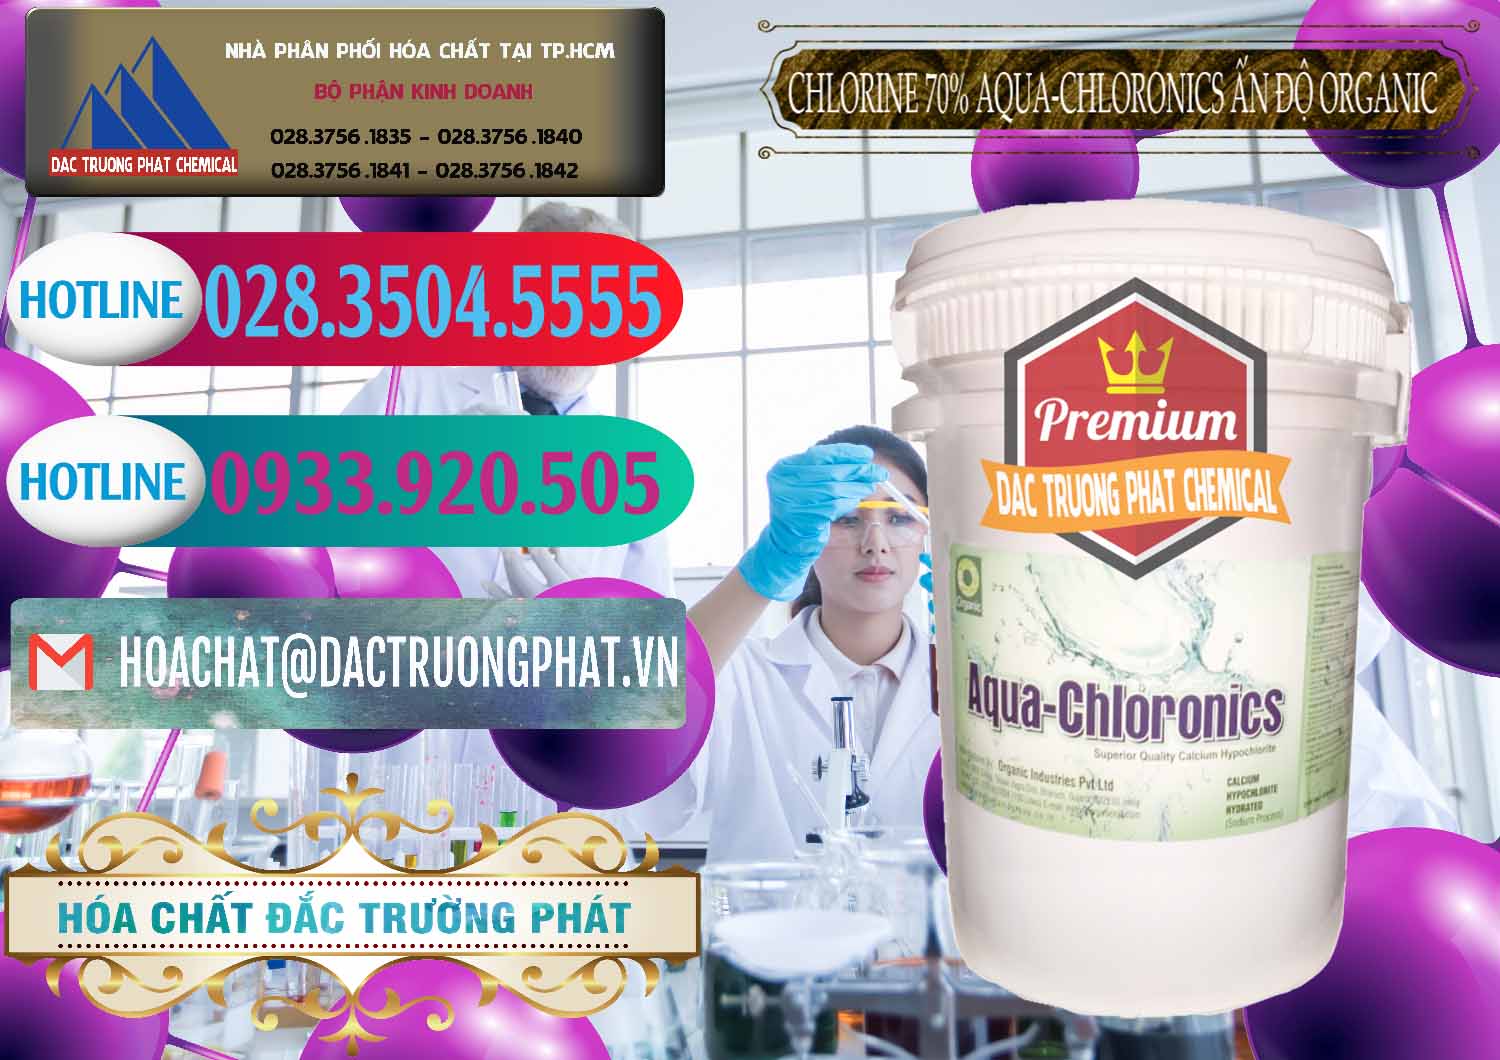 Công ty chuyên cung ứng ( bán ) Chlorine – Clorin 70% Aqua-Chloronics Ấn Độ Organic India - 0211 - Nhà cung cấp - nhập khẩu hóa chất tại TP.HCM - truongphat.vn